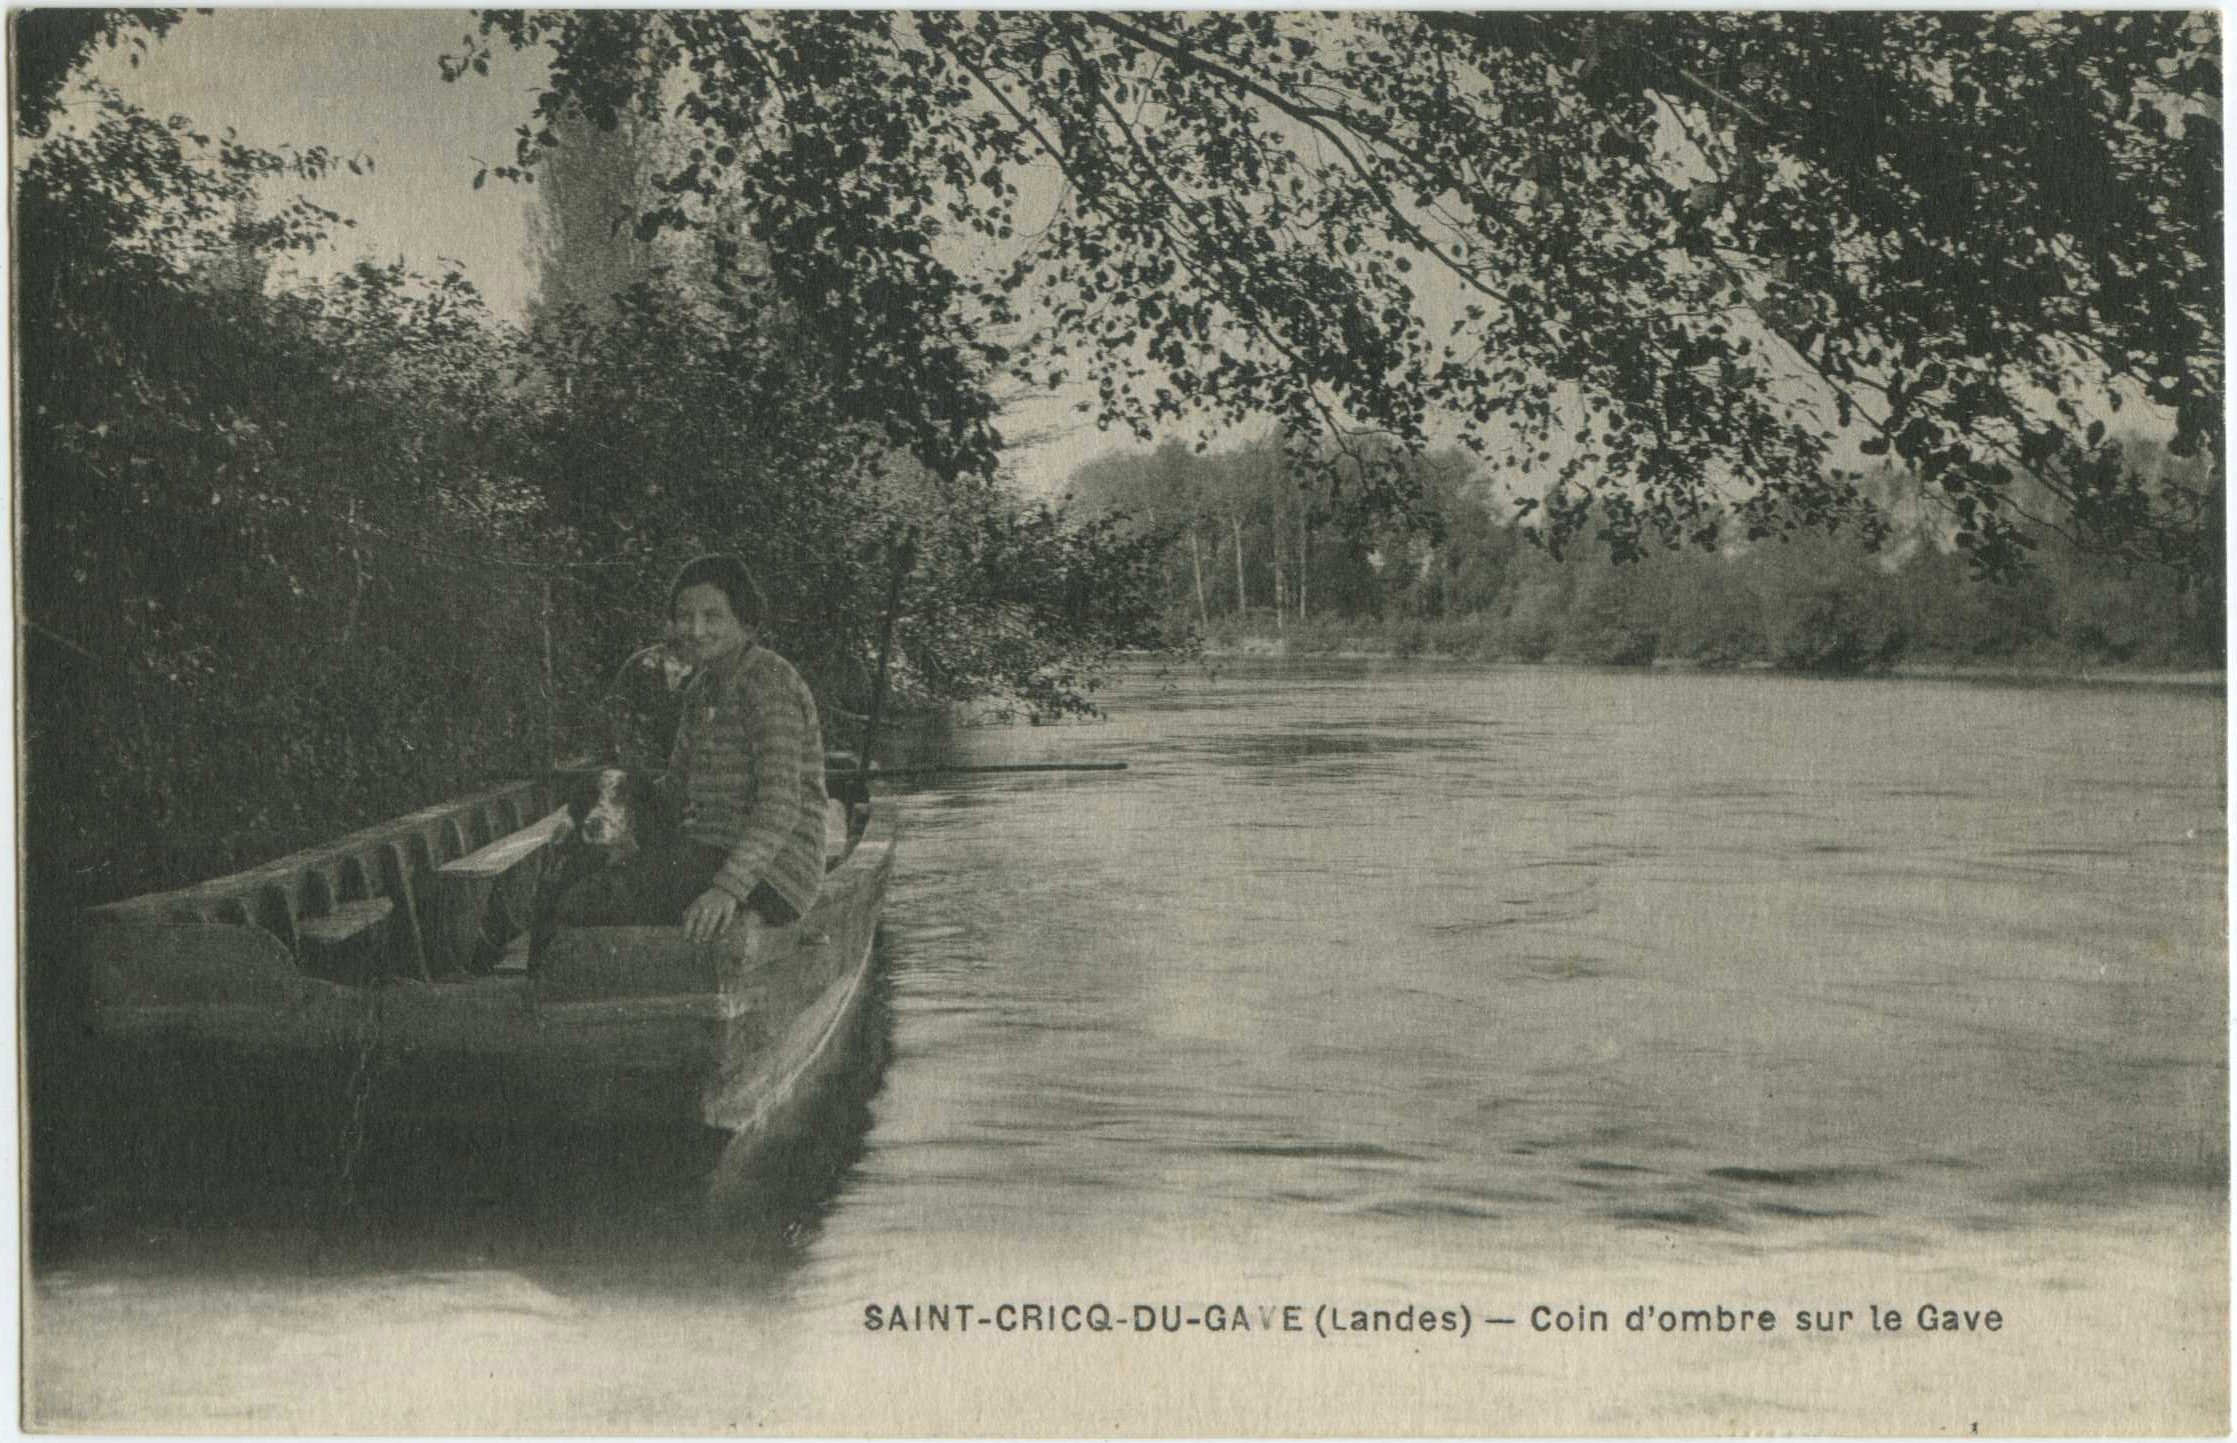 Saint-Cricq-du-Gave - Coin d'ombre sur le Gave